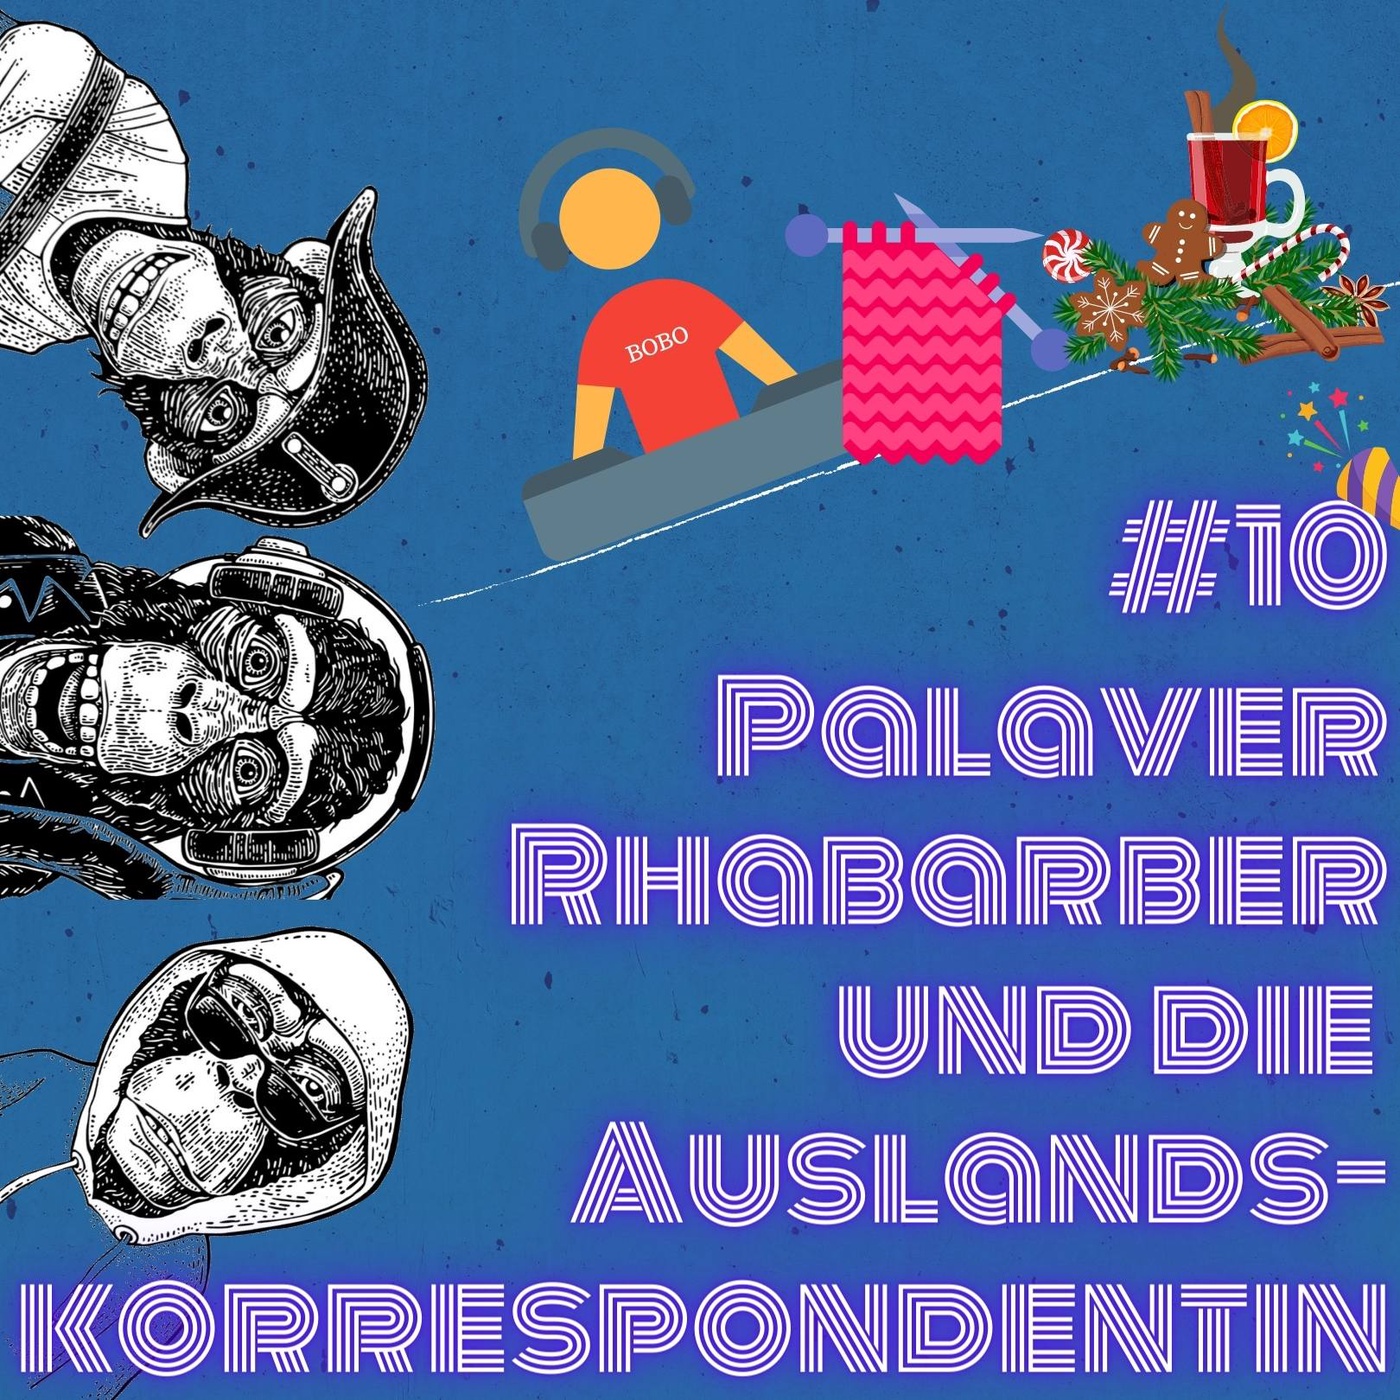 #10 Palaver Rhabarber und die Auslandskorrespondentin